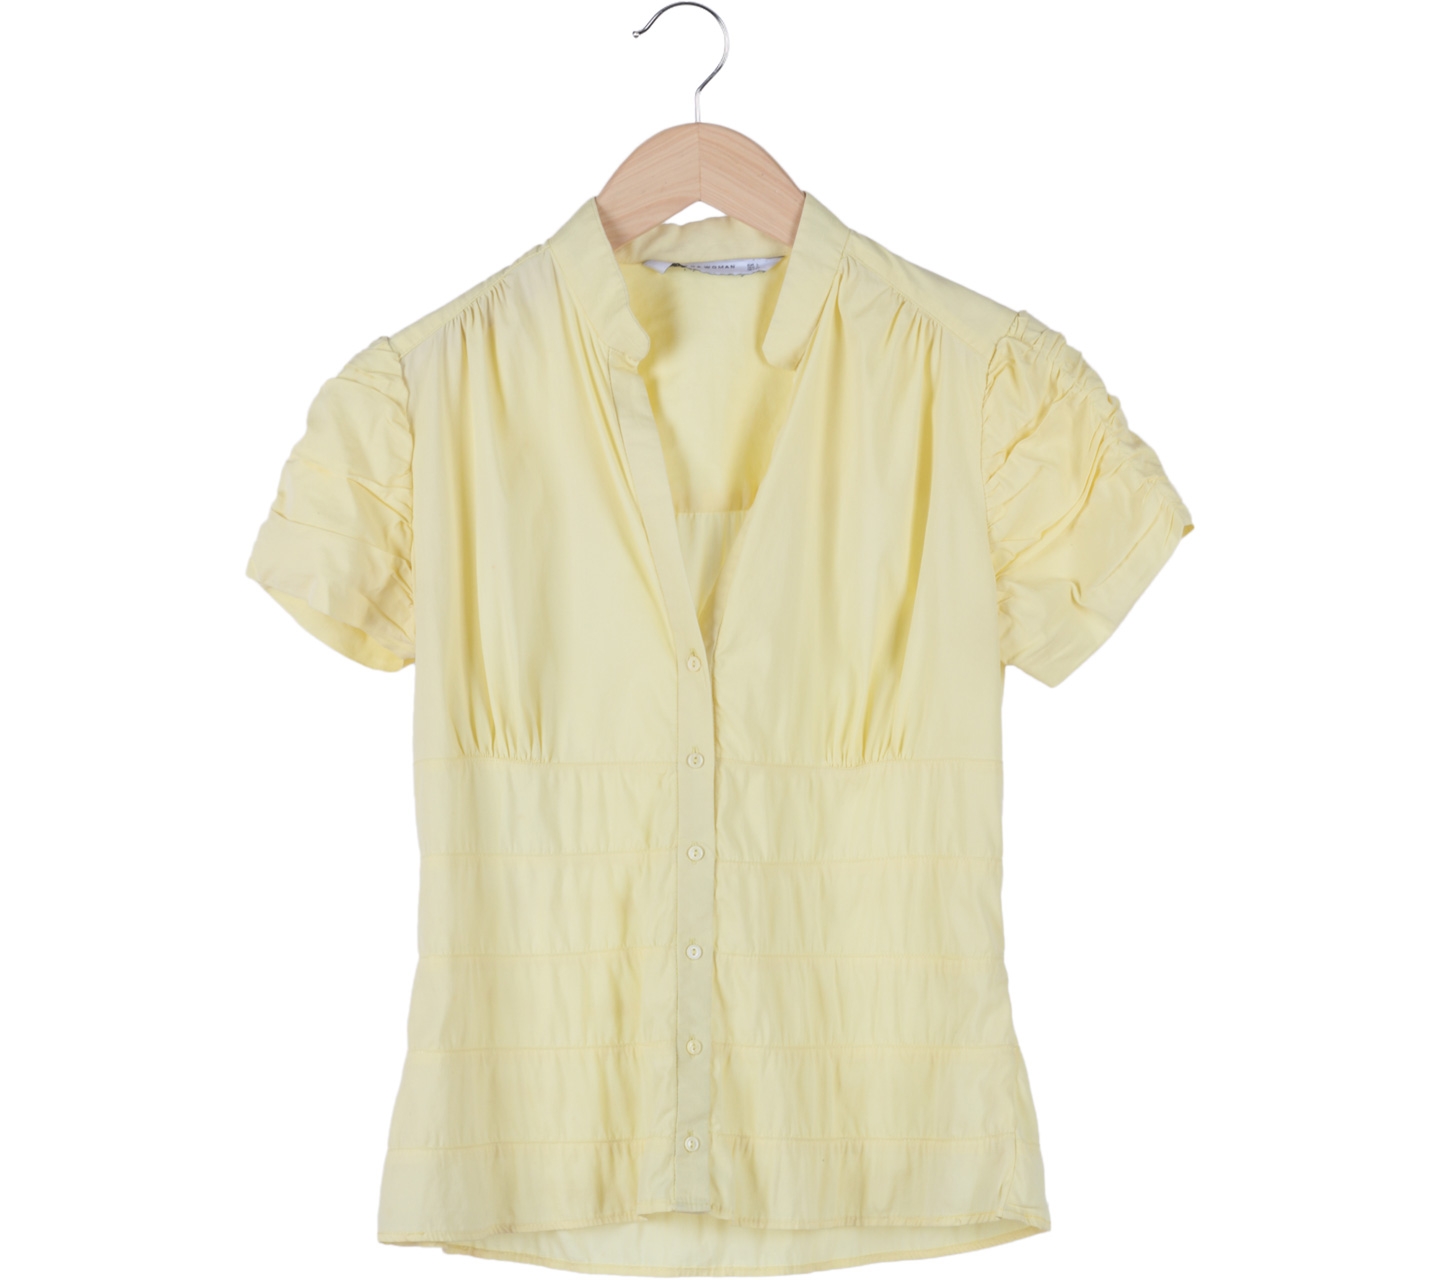 Zara Yellow Shirt